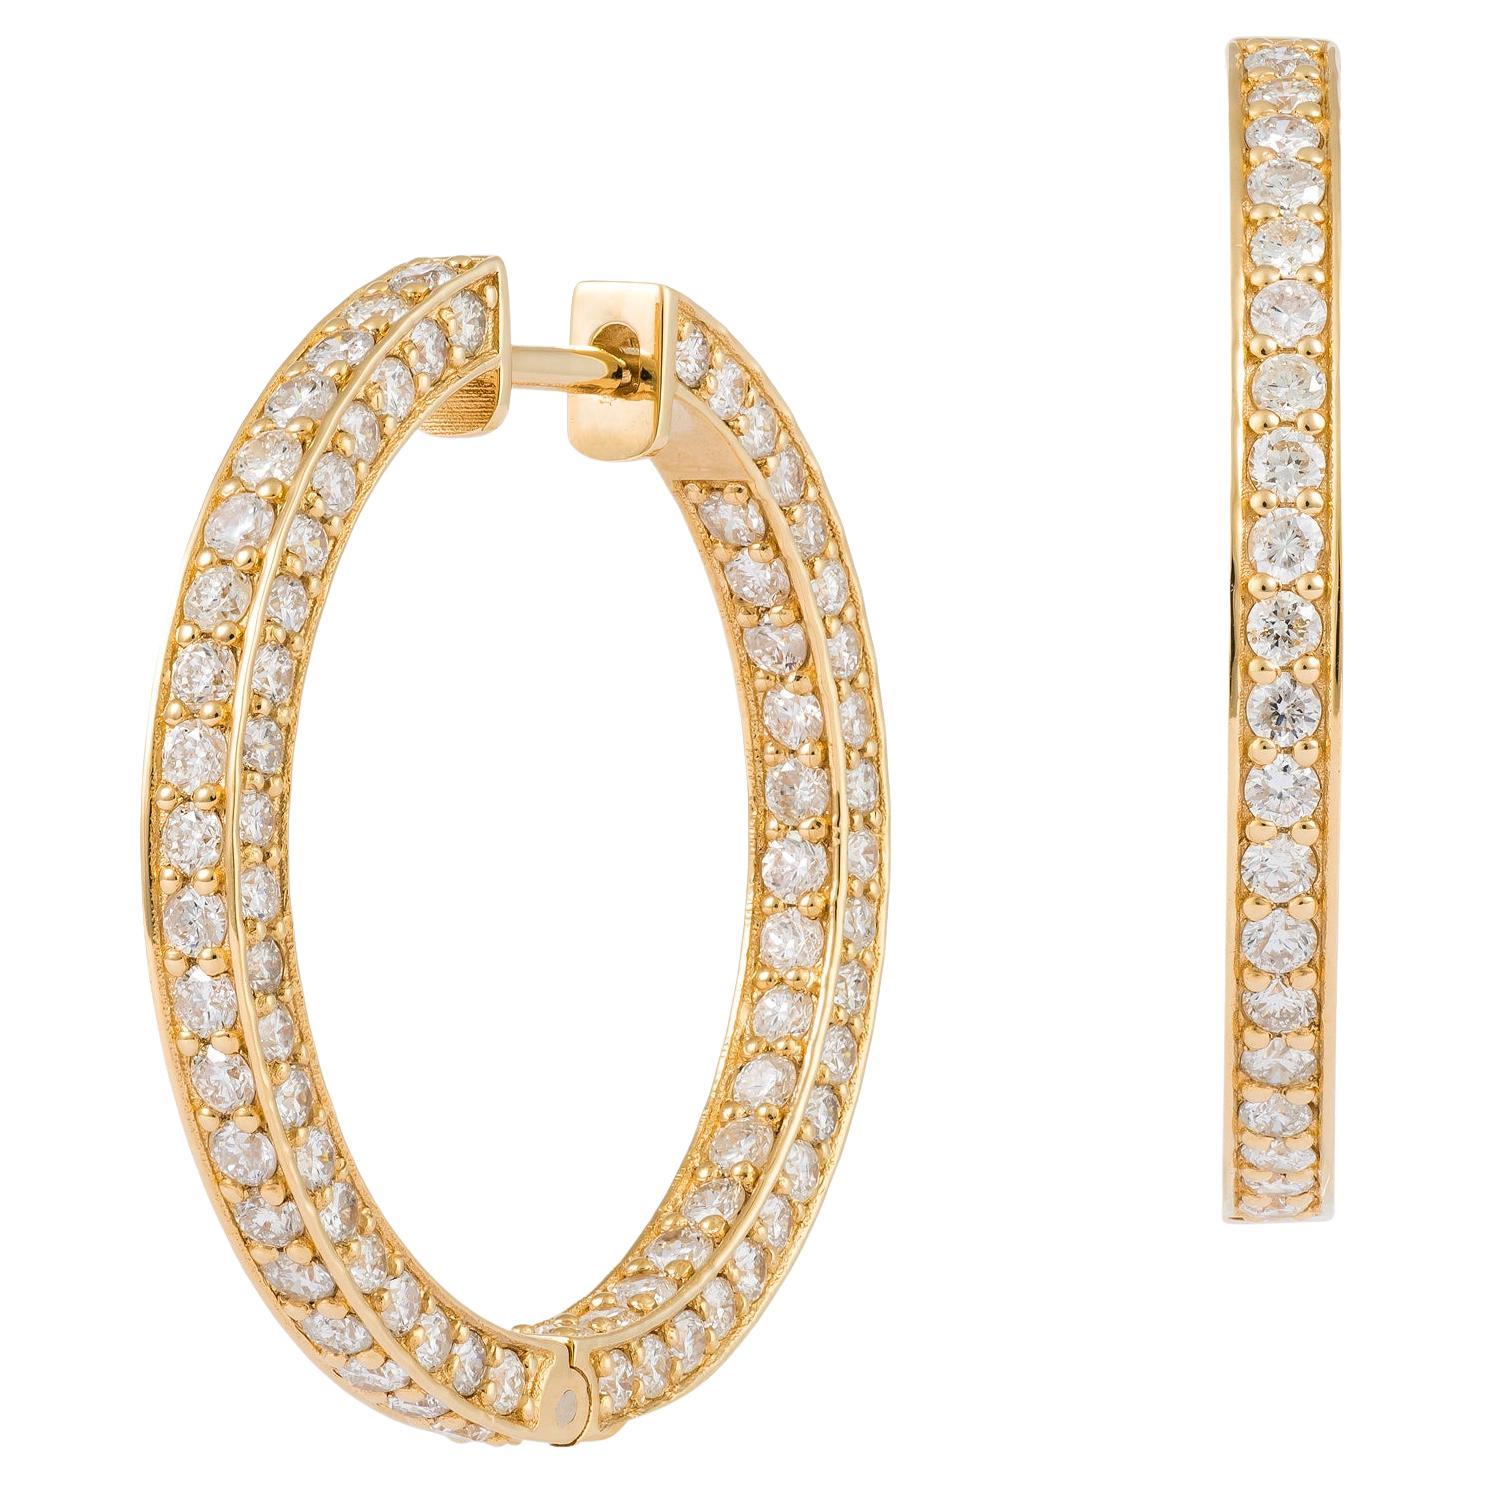 NWT 18, 000 18KT Yellow Gold Fancy Gorgeous Glittering Diamond Hoop Earrings